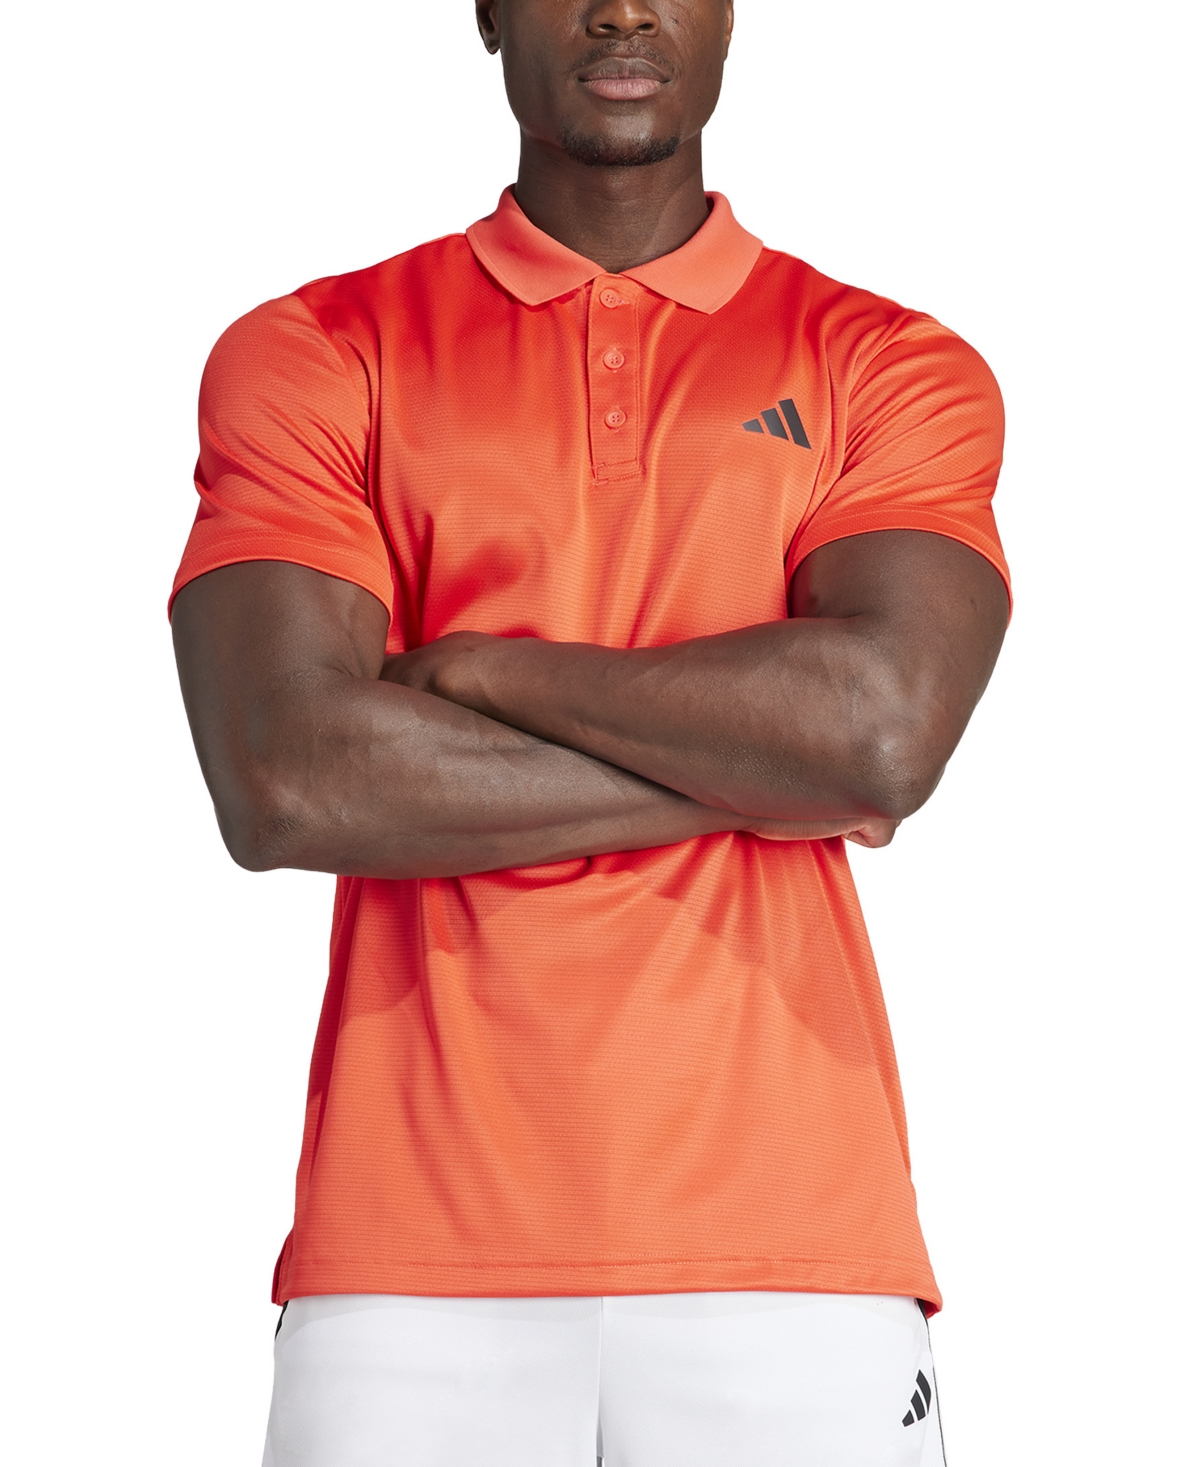 Adidas Originals Men's Essentials Aeroready Training Polo Shirt In Brite Orange Red